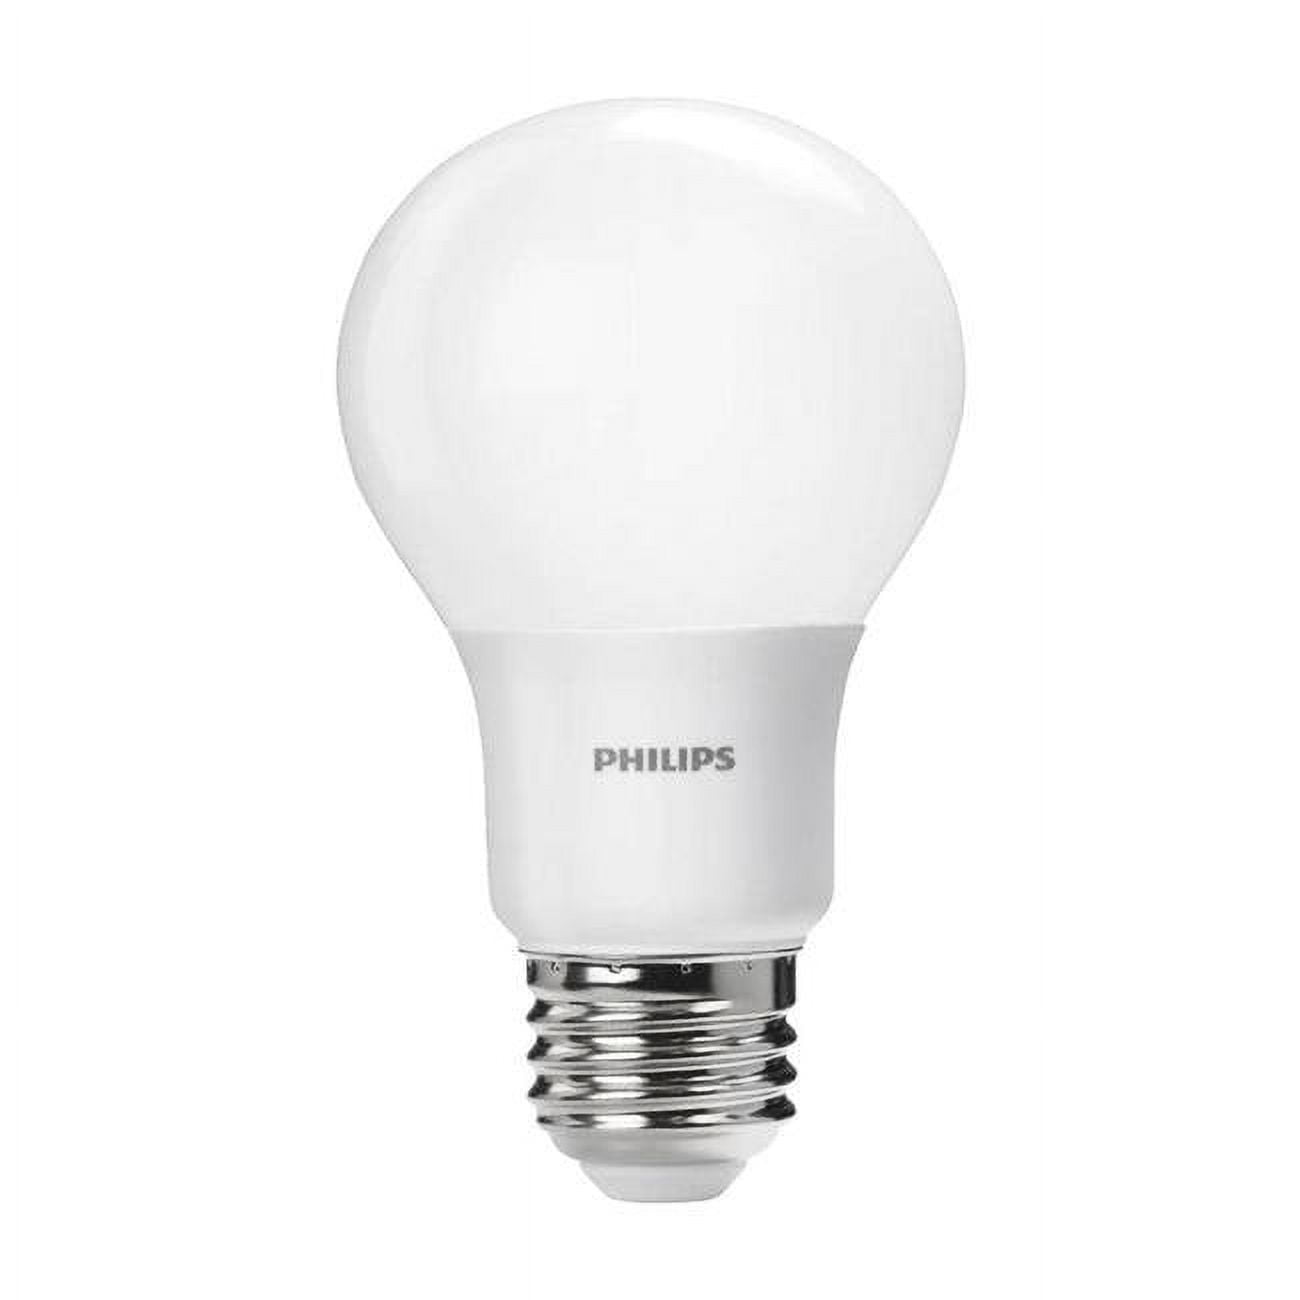 3001788 75 Watt Equivalence A19 E26 Medium Led Bulb, Daylight